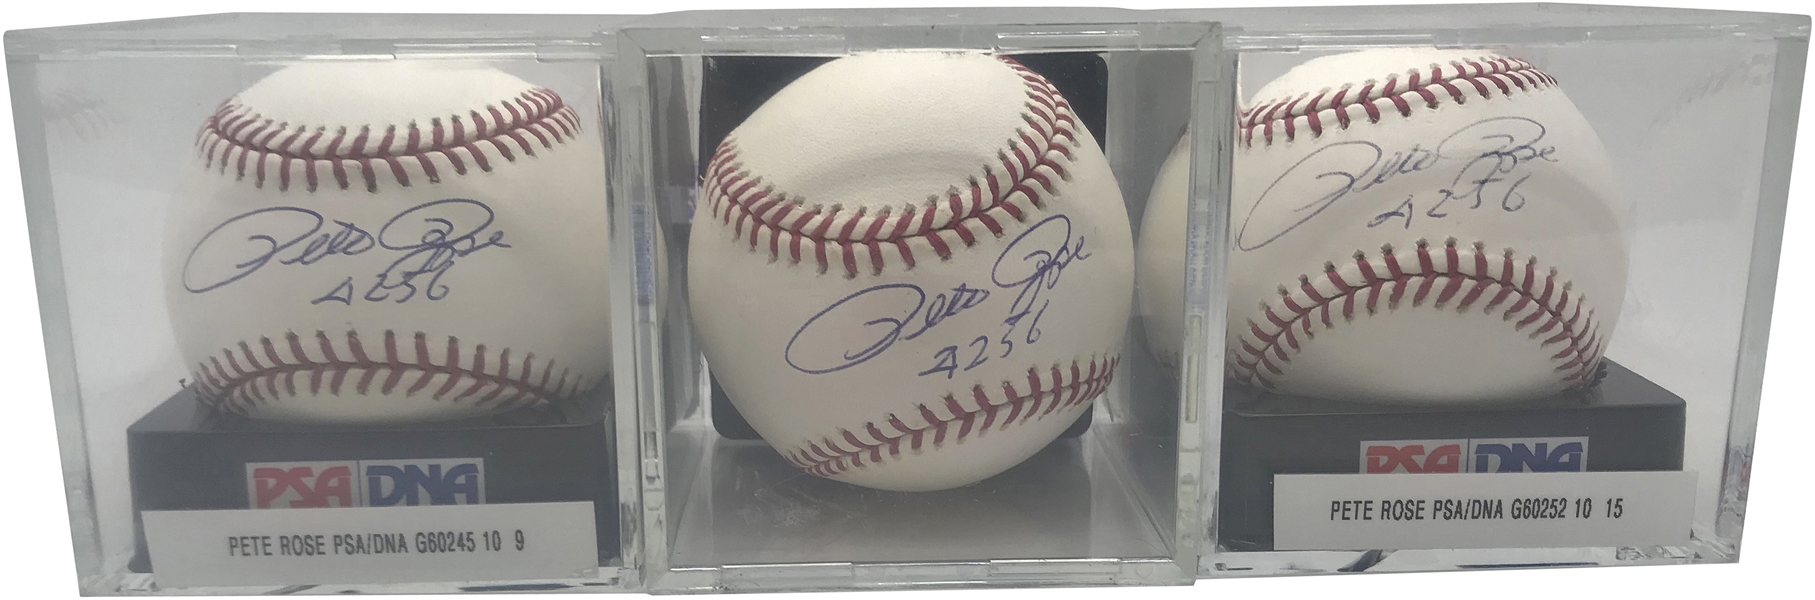 Pete Rose Lot of Three (3) Signed & Inscribed "4256" OML Baseballs PSA/DNA GEM MINT 10!